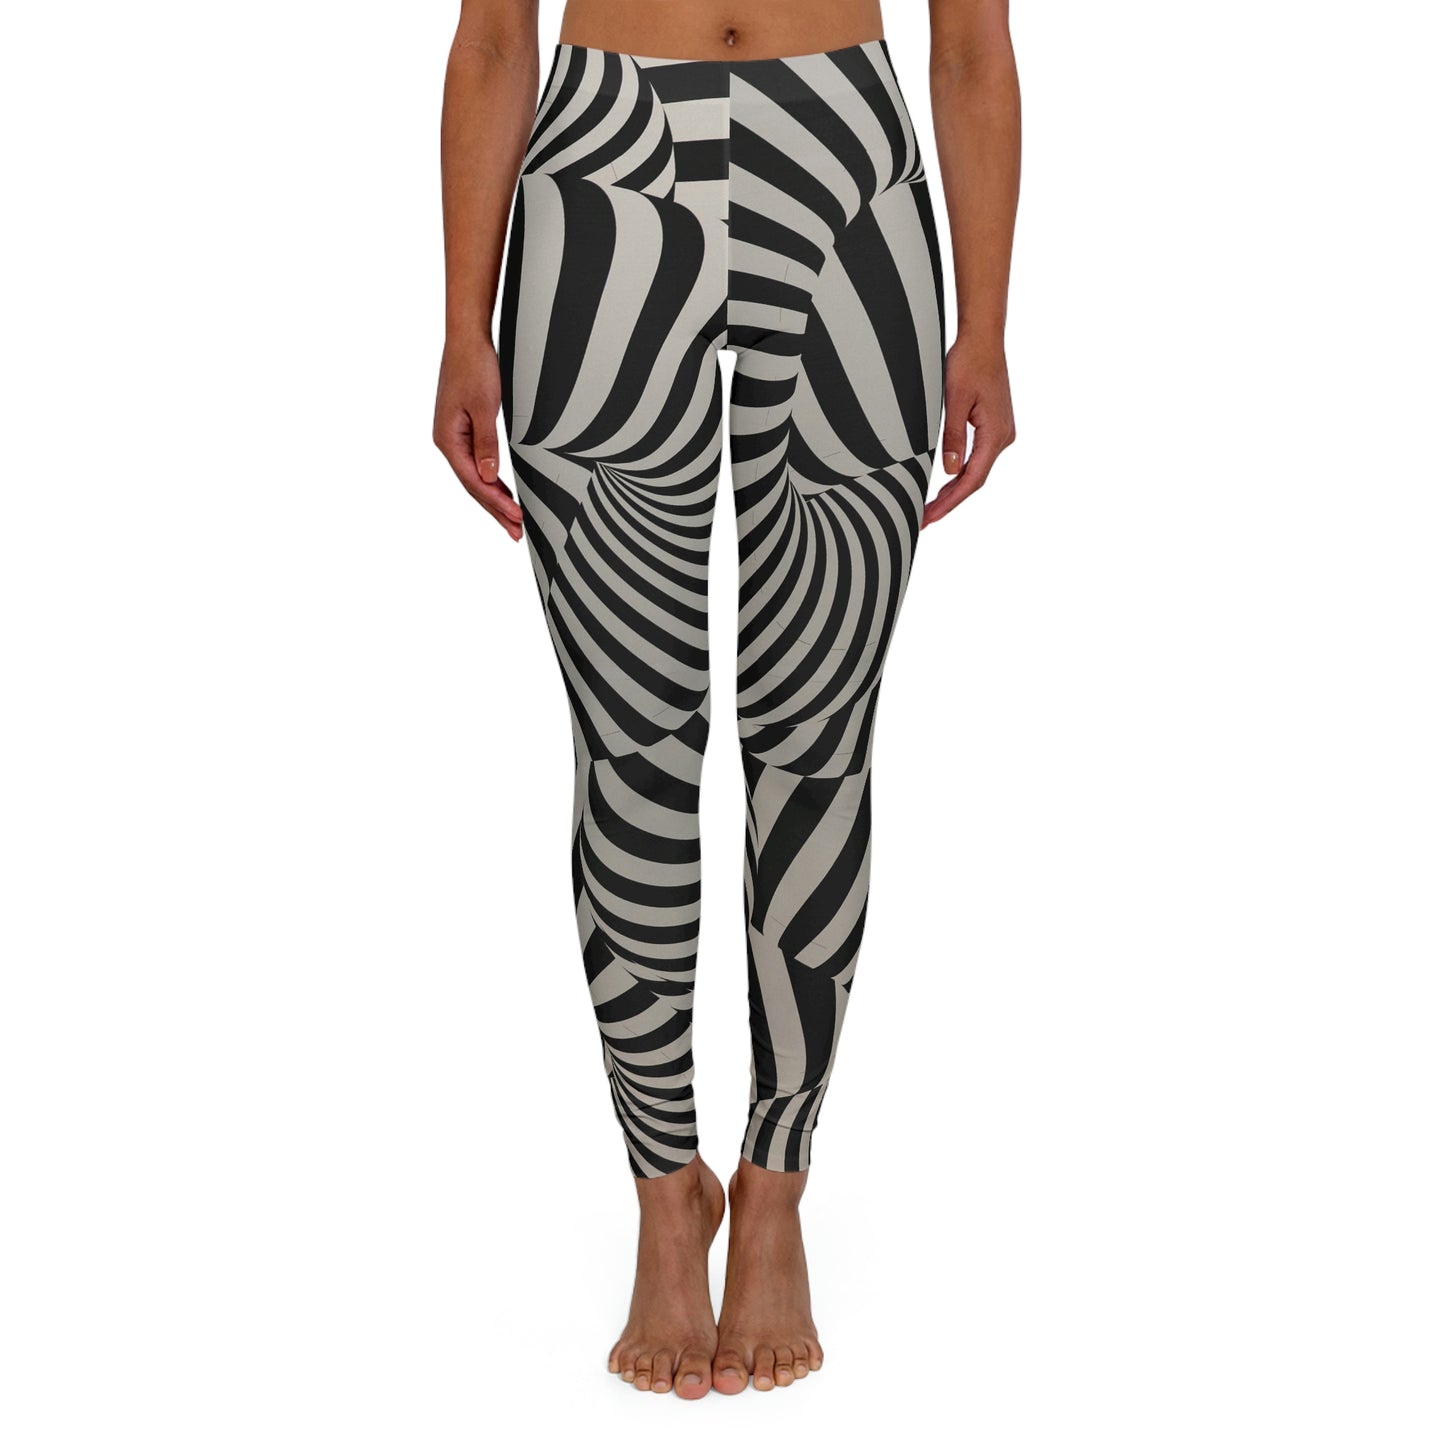 Zebra Women's Spandex Leggings